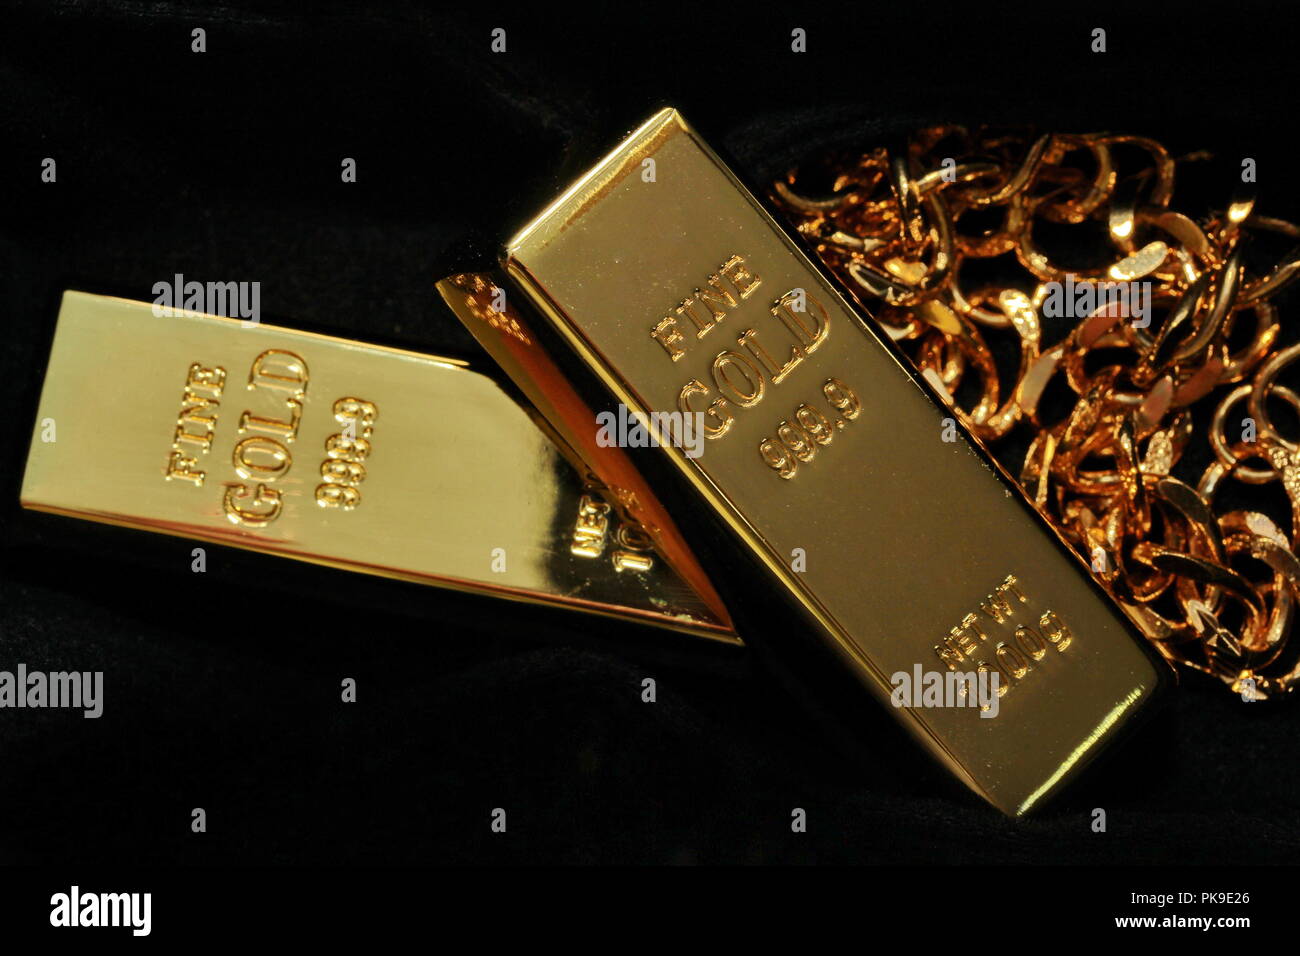 Goldbarren mit einem Gewicht von 1 kg, 2 sticks gestapelt und goldene  Halskette in Finsternis, selektive konzentrieren Stockfotografie - Alamy